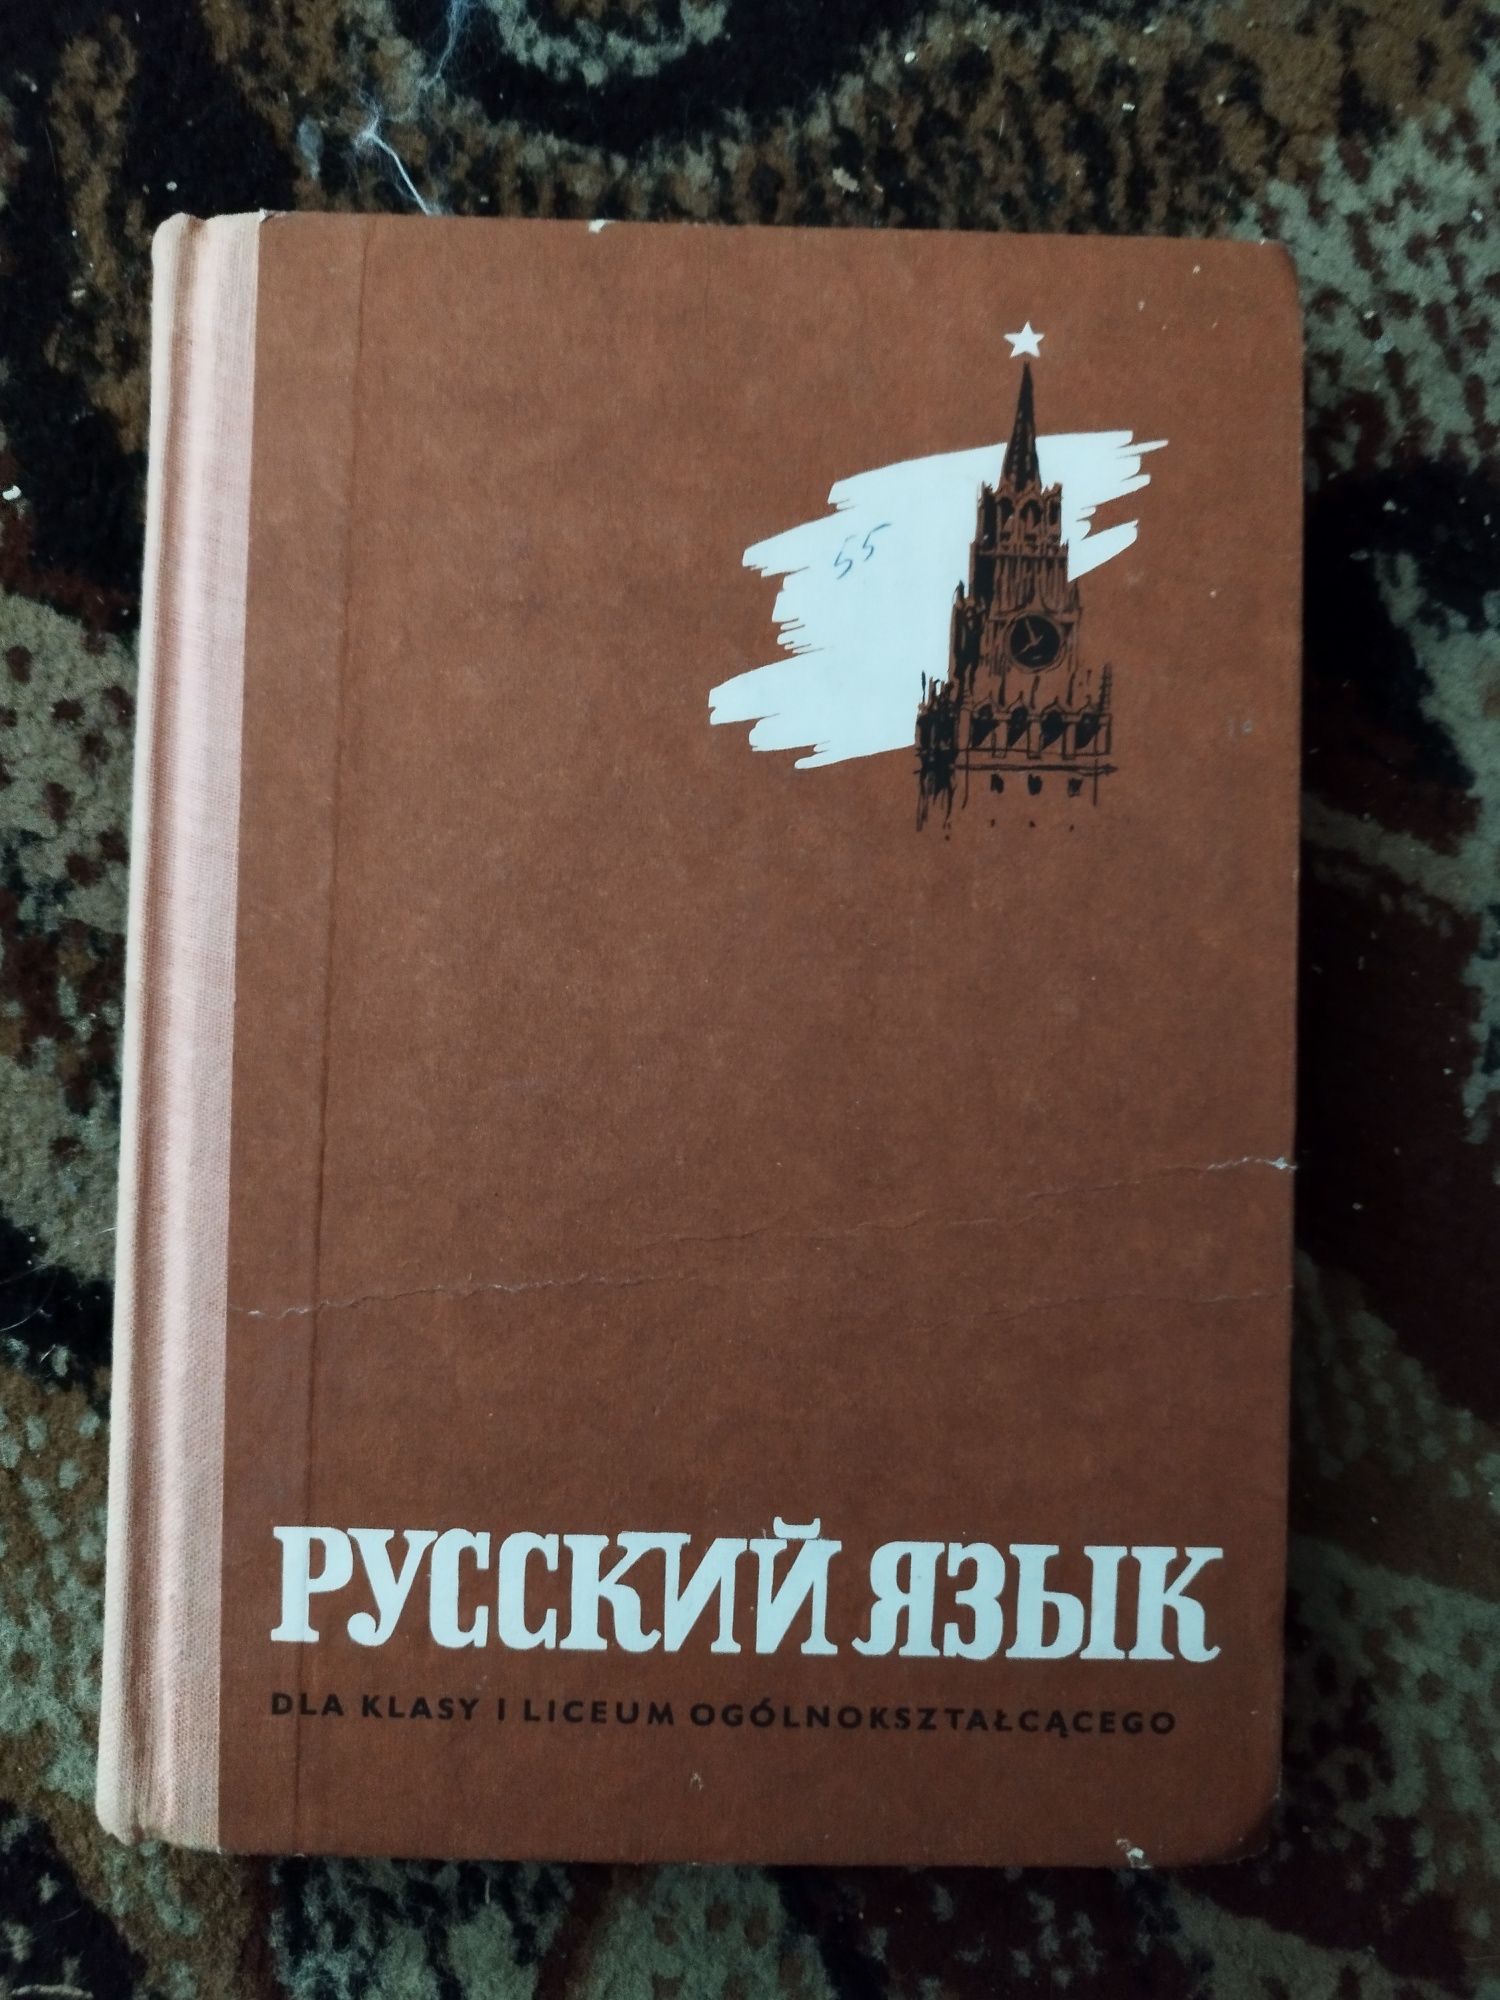 Ruski dla licealistów książka